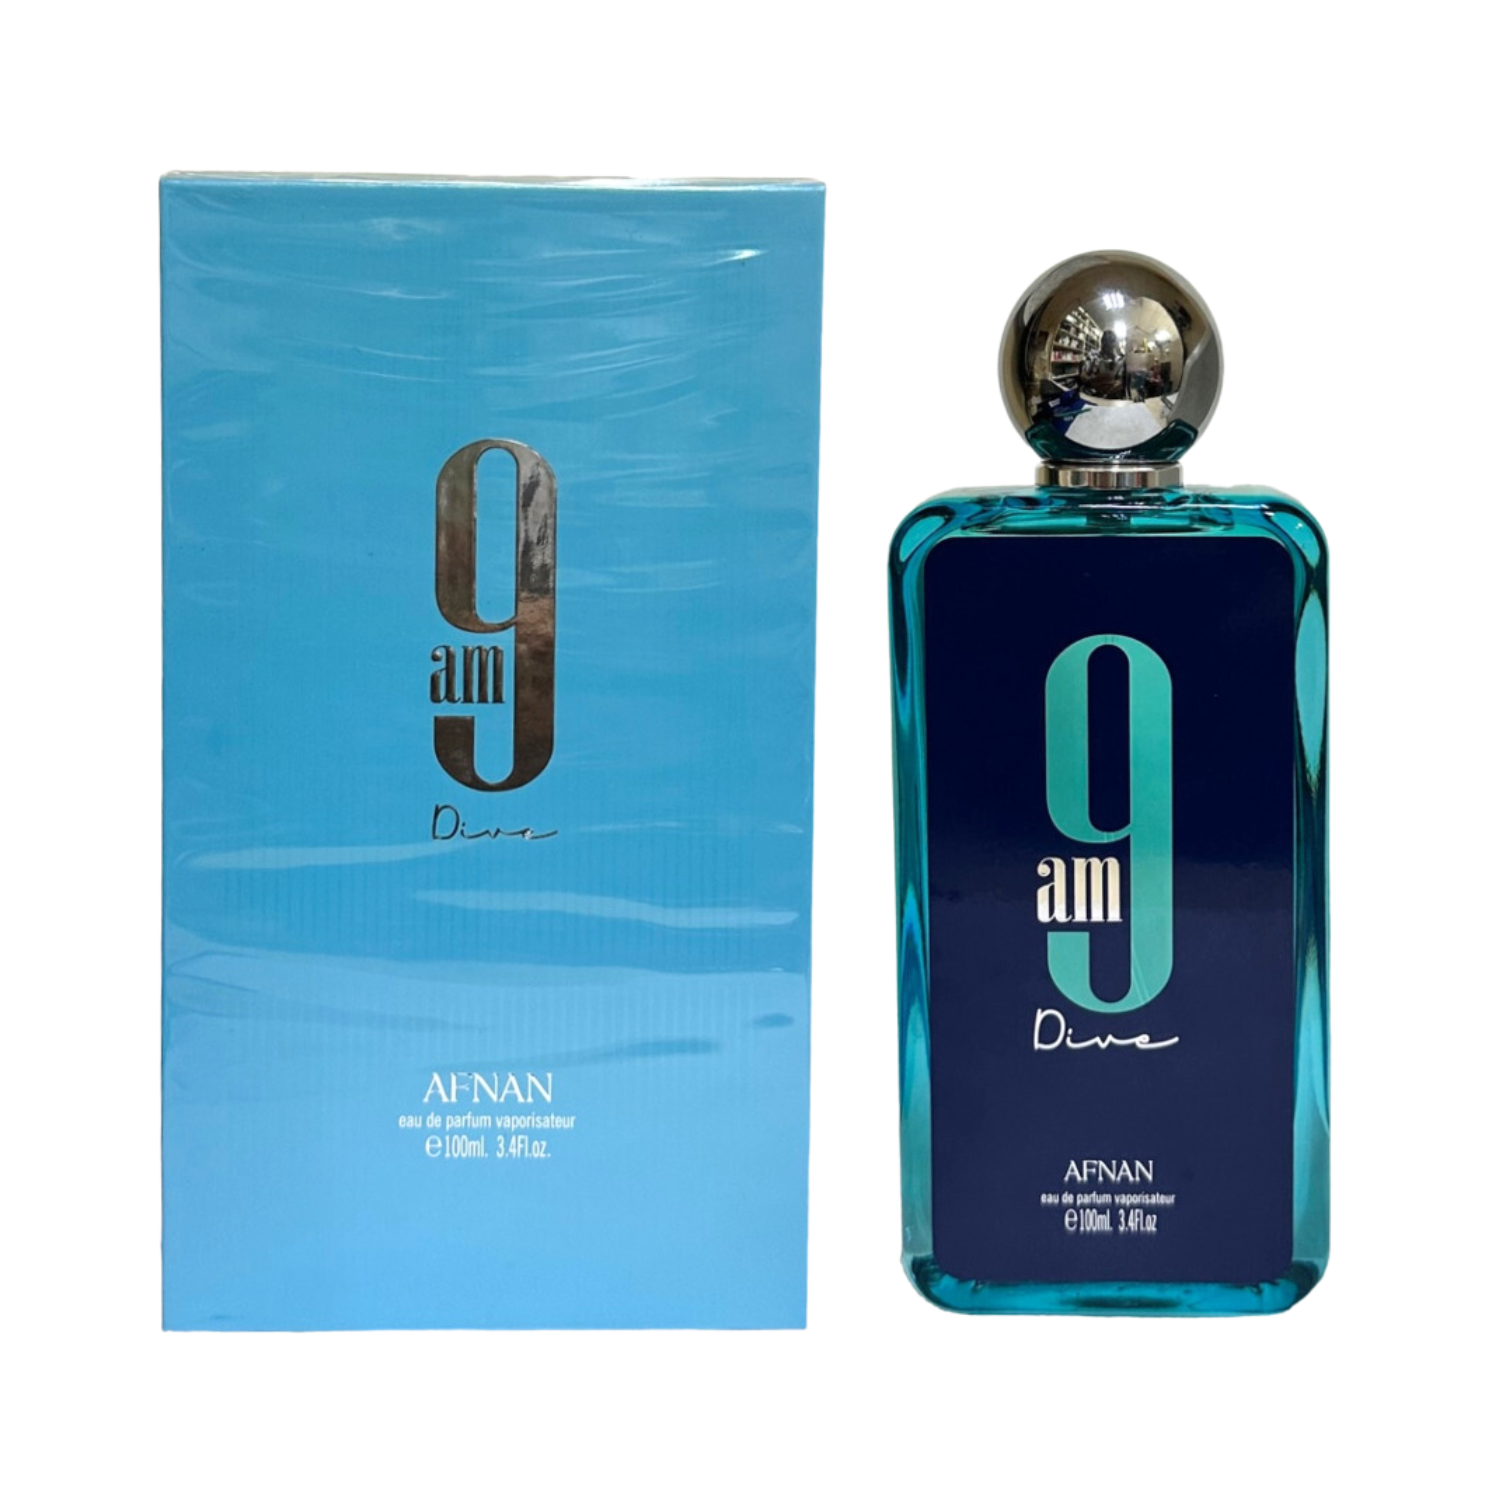 afnan-9-am-dive-eau-de-parfum-for-men-women-perfume-100ml